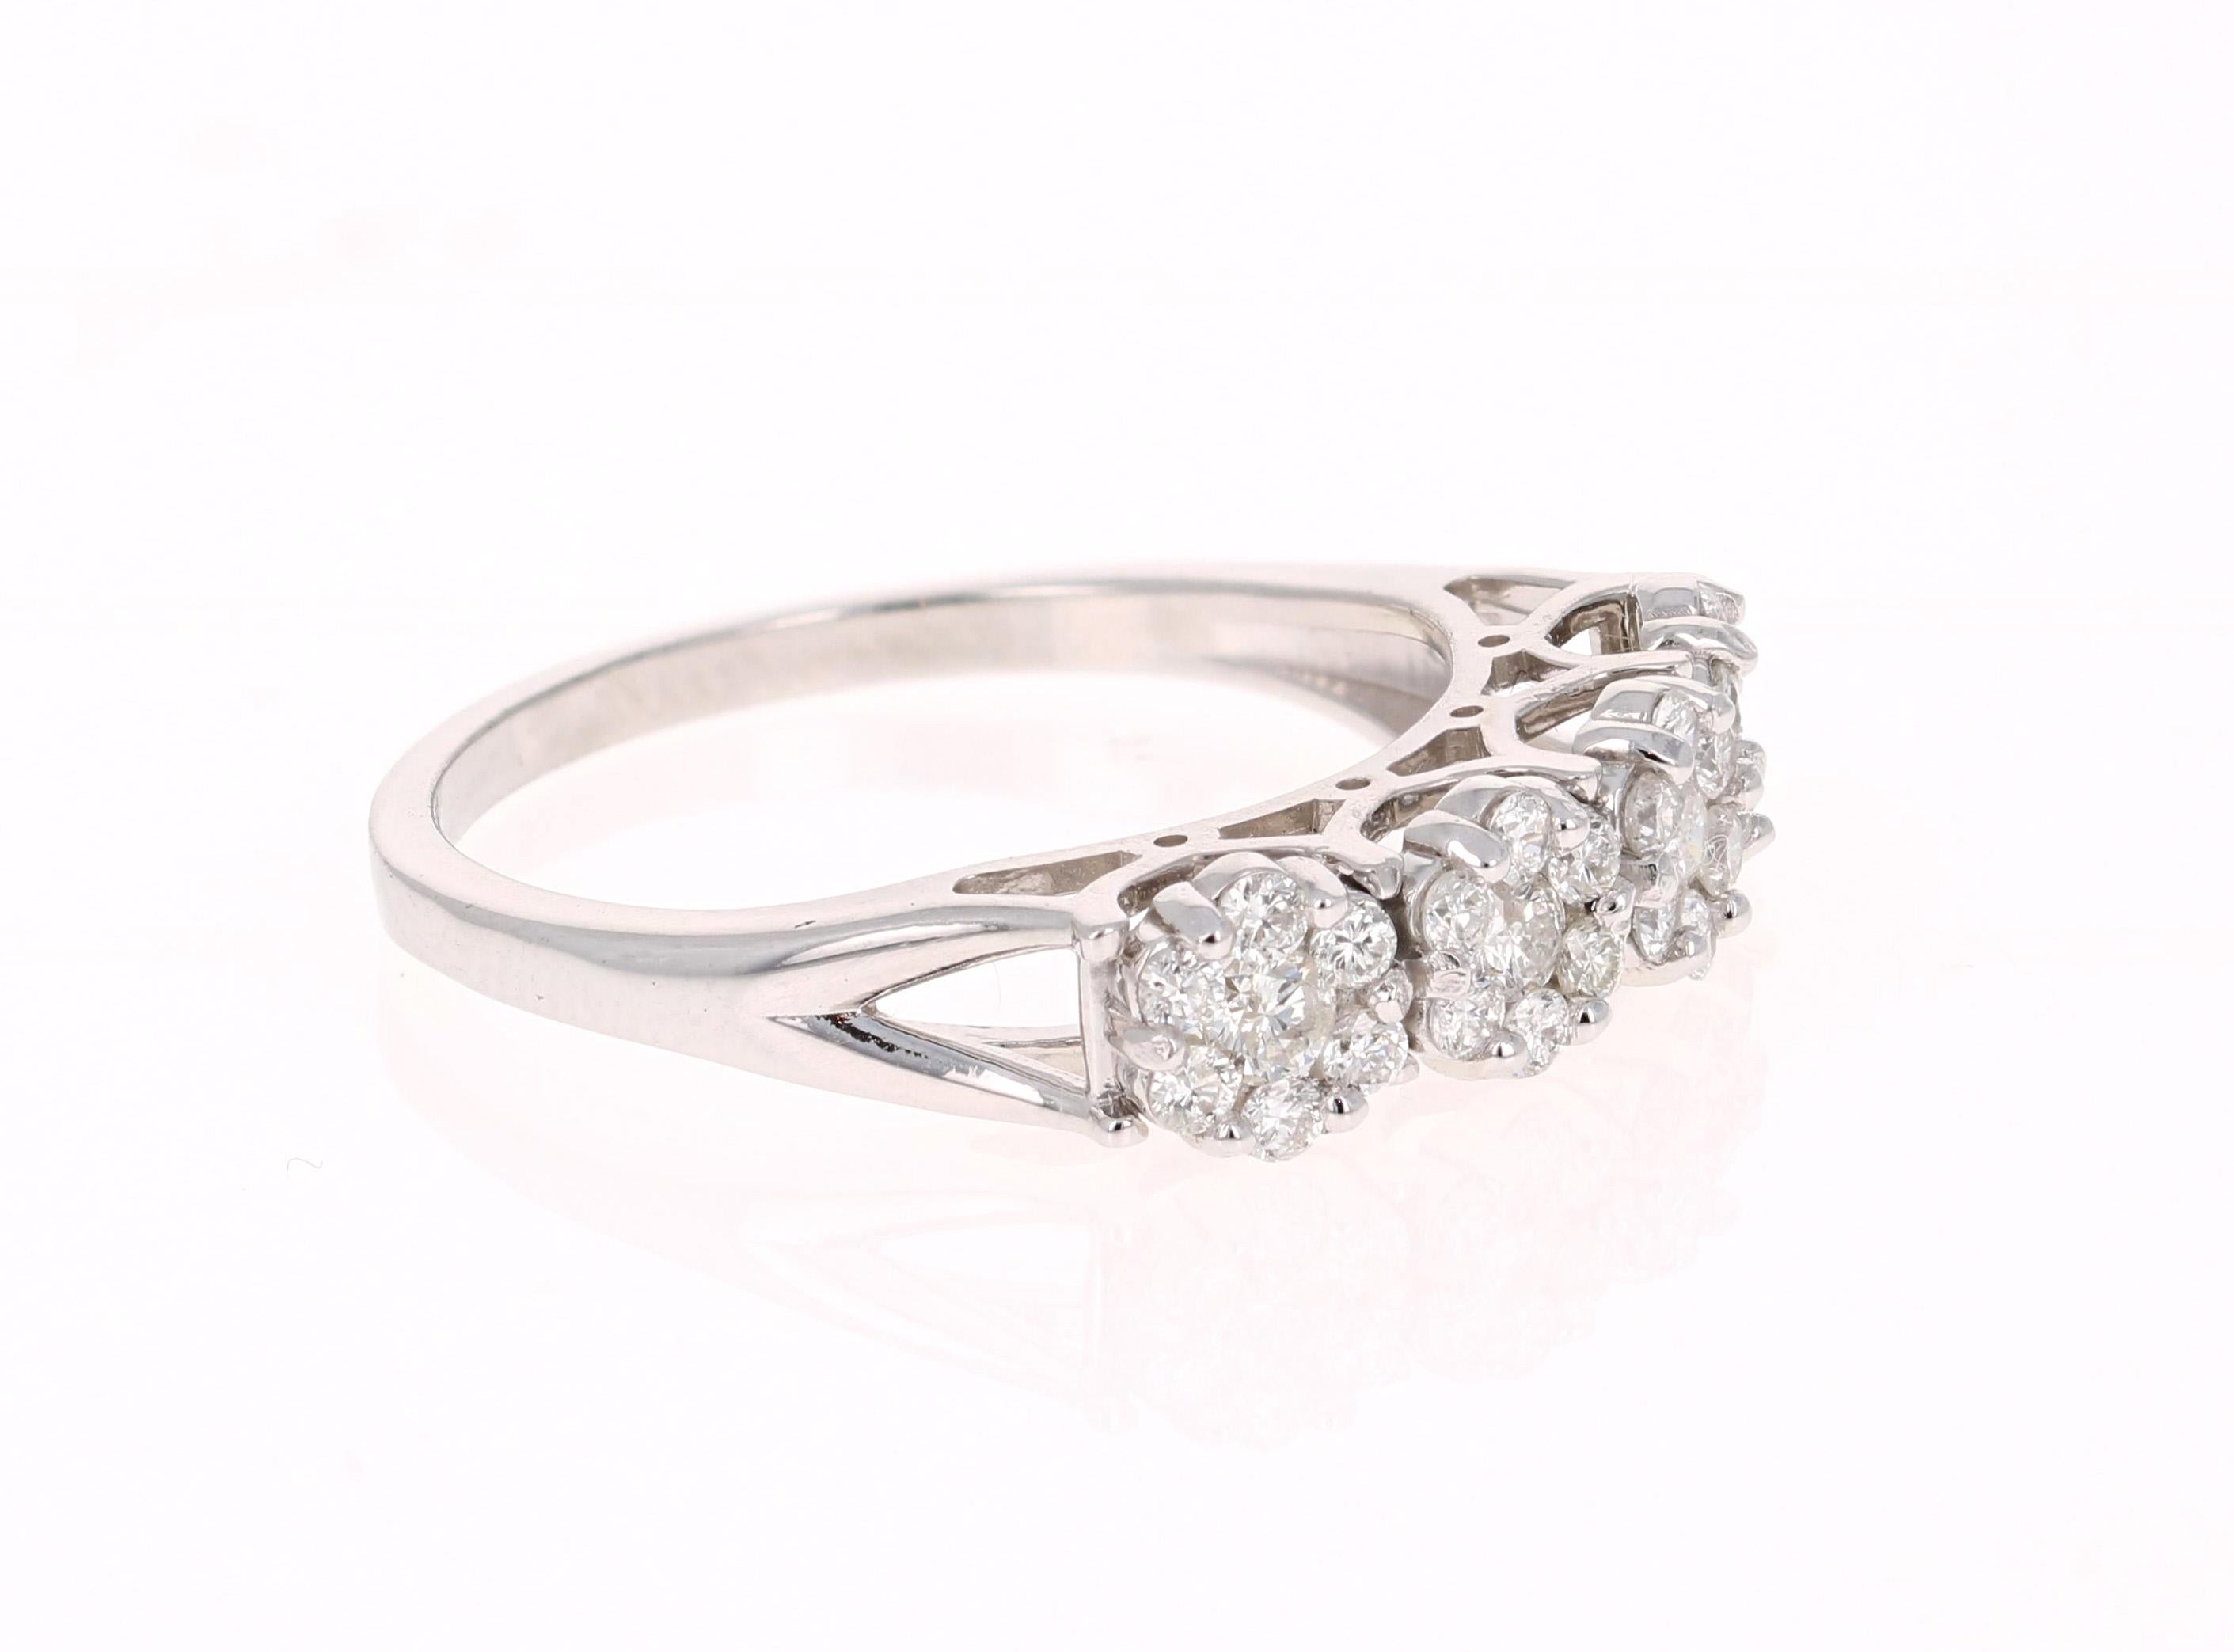 Dieser Ring hat eine Blume Design und hat 28 Round Cut Diamanten, die 0,53 Karat wiegt. 

Er ist wunderschön in 14 Karat Weißgold gefasst und wiegt etwa 2,6 Gramm

Der Ring hat die Größe 6 3/4 und kann kostenlos umbestellt werden. 

